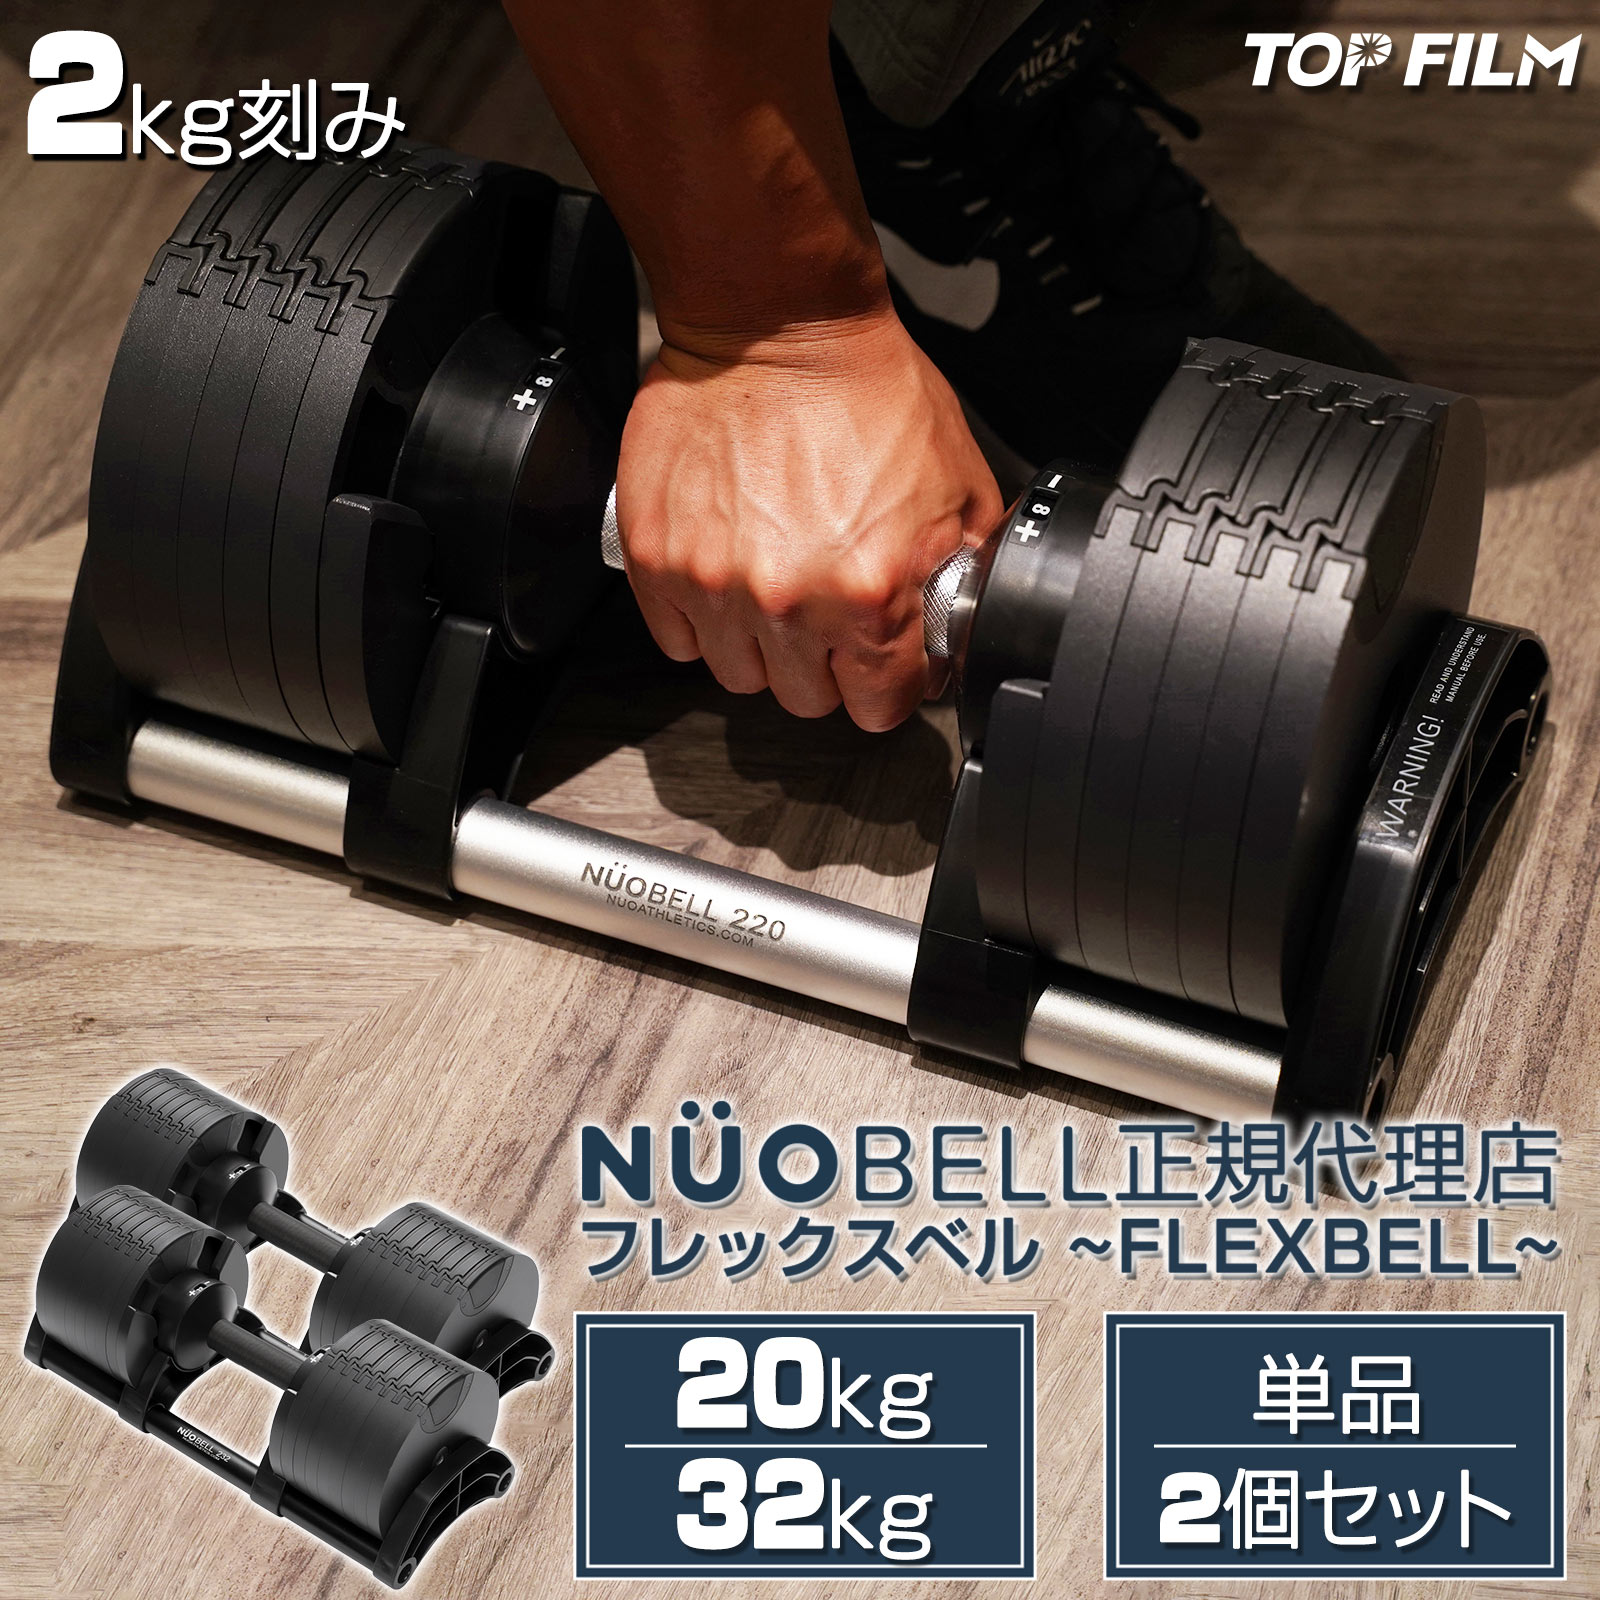 ダンベル 可変式 2個セット 32kg フレックスベル : flex32-2